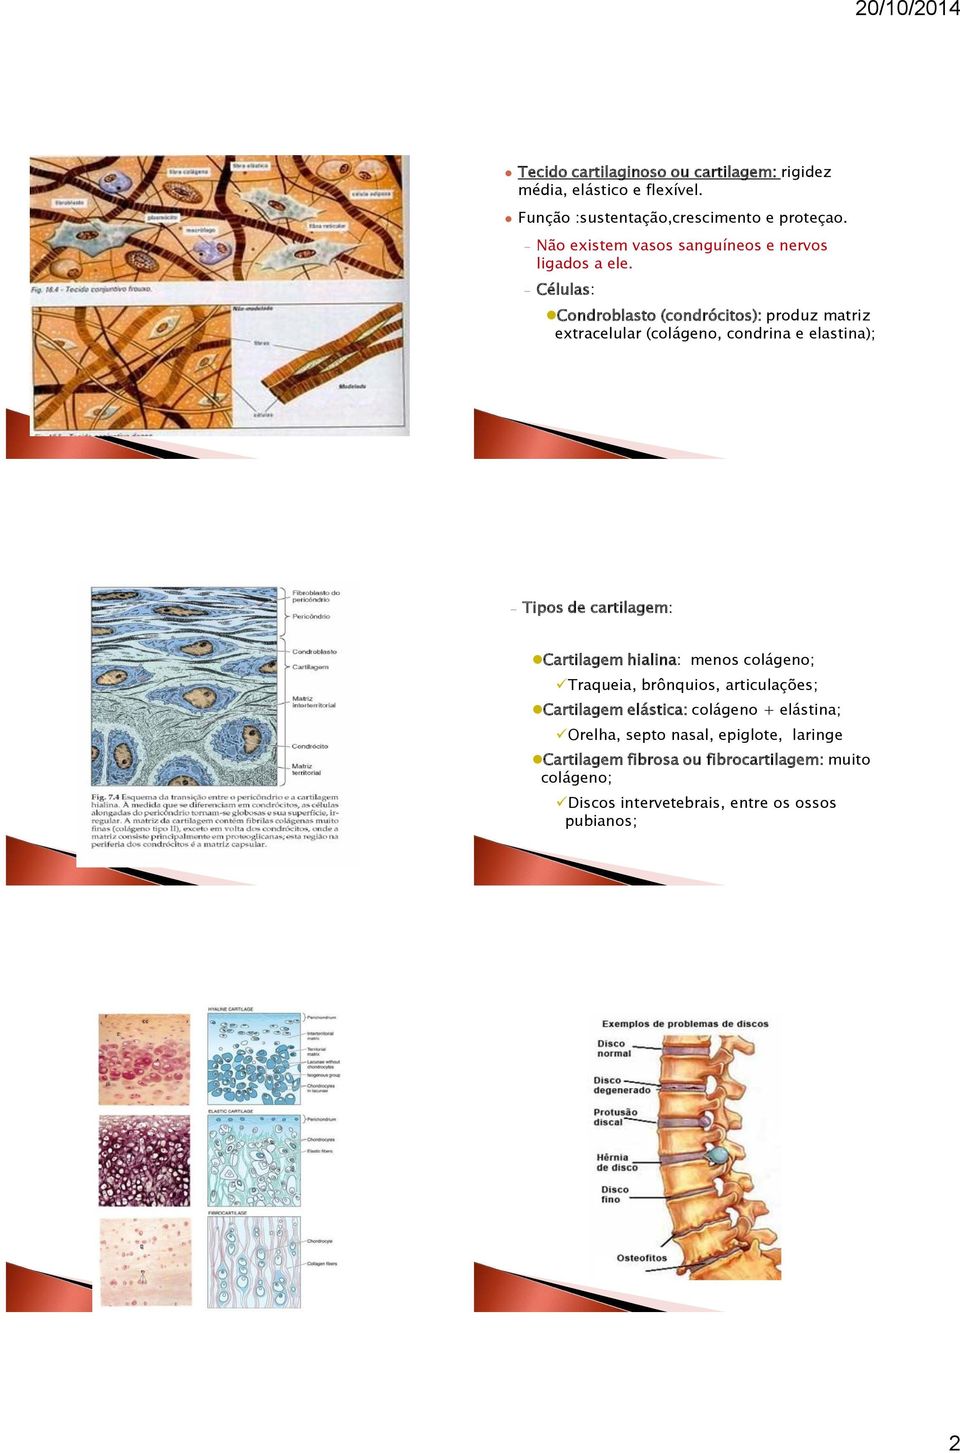 Células: Condroblasto (condrócitos): produz matriz extracelular (colágeno, condrina e elastina); Tipos de cartilagem: Cartilagem